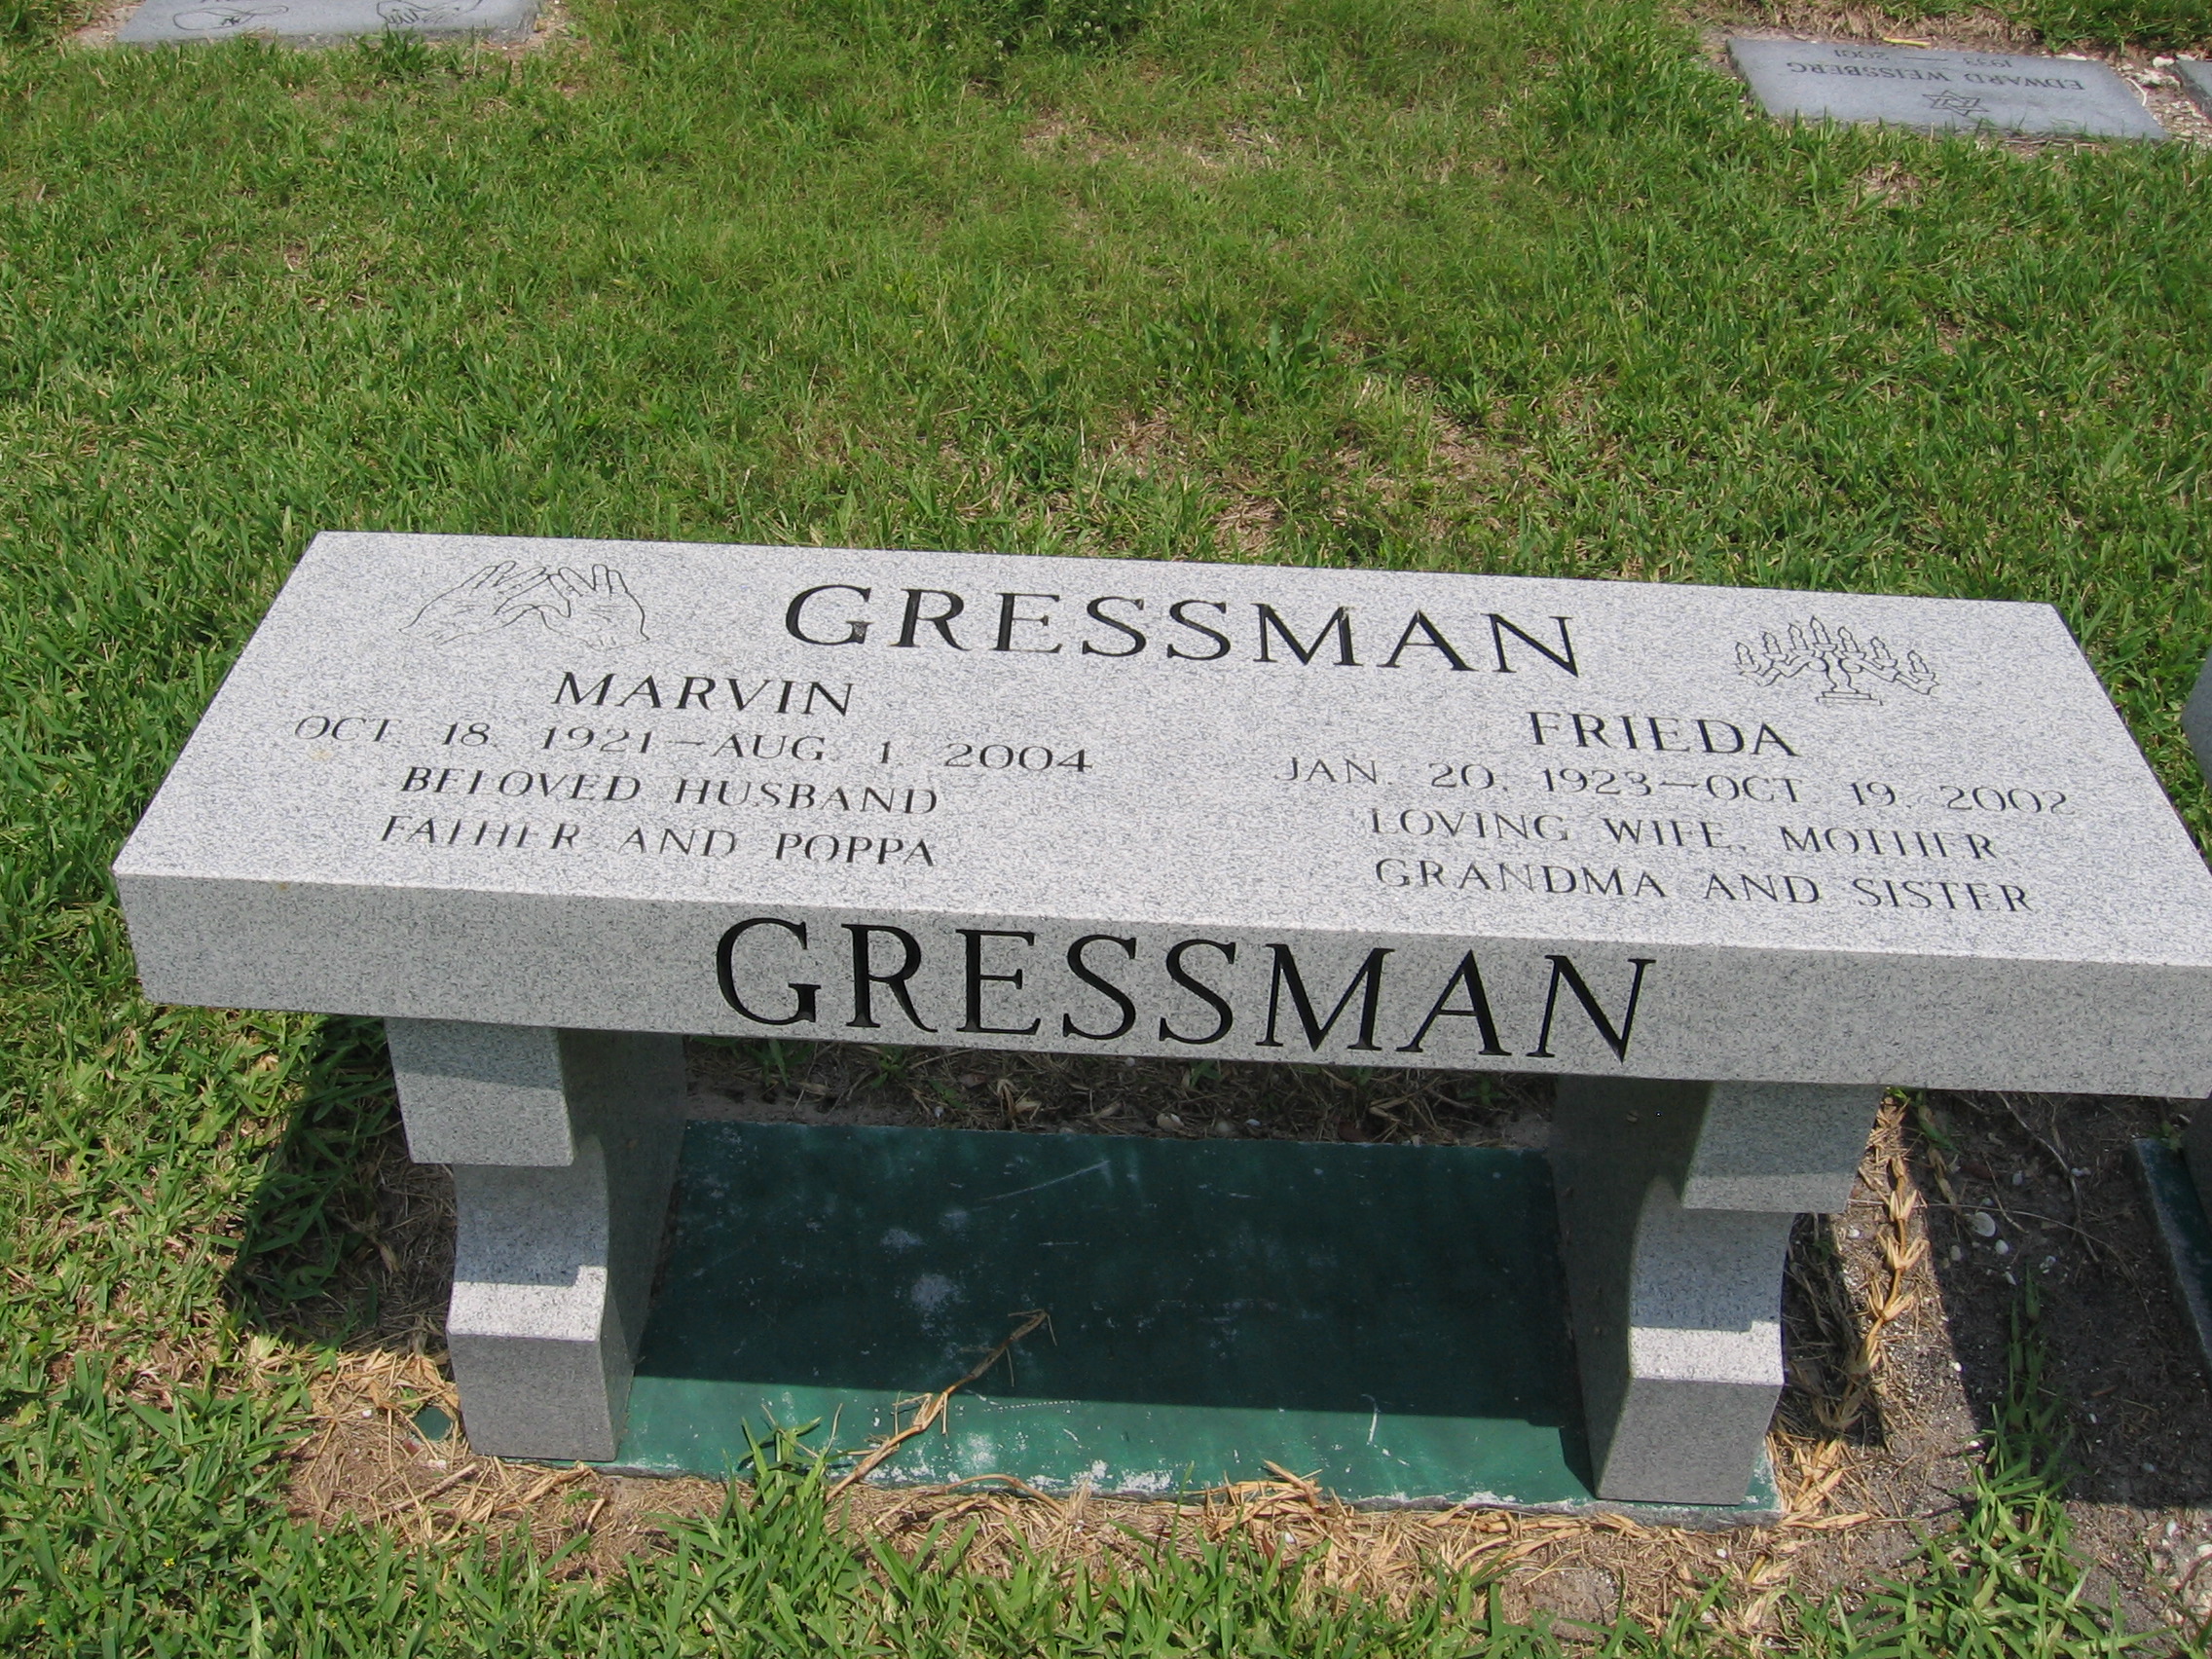 Marvin Gressman